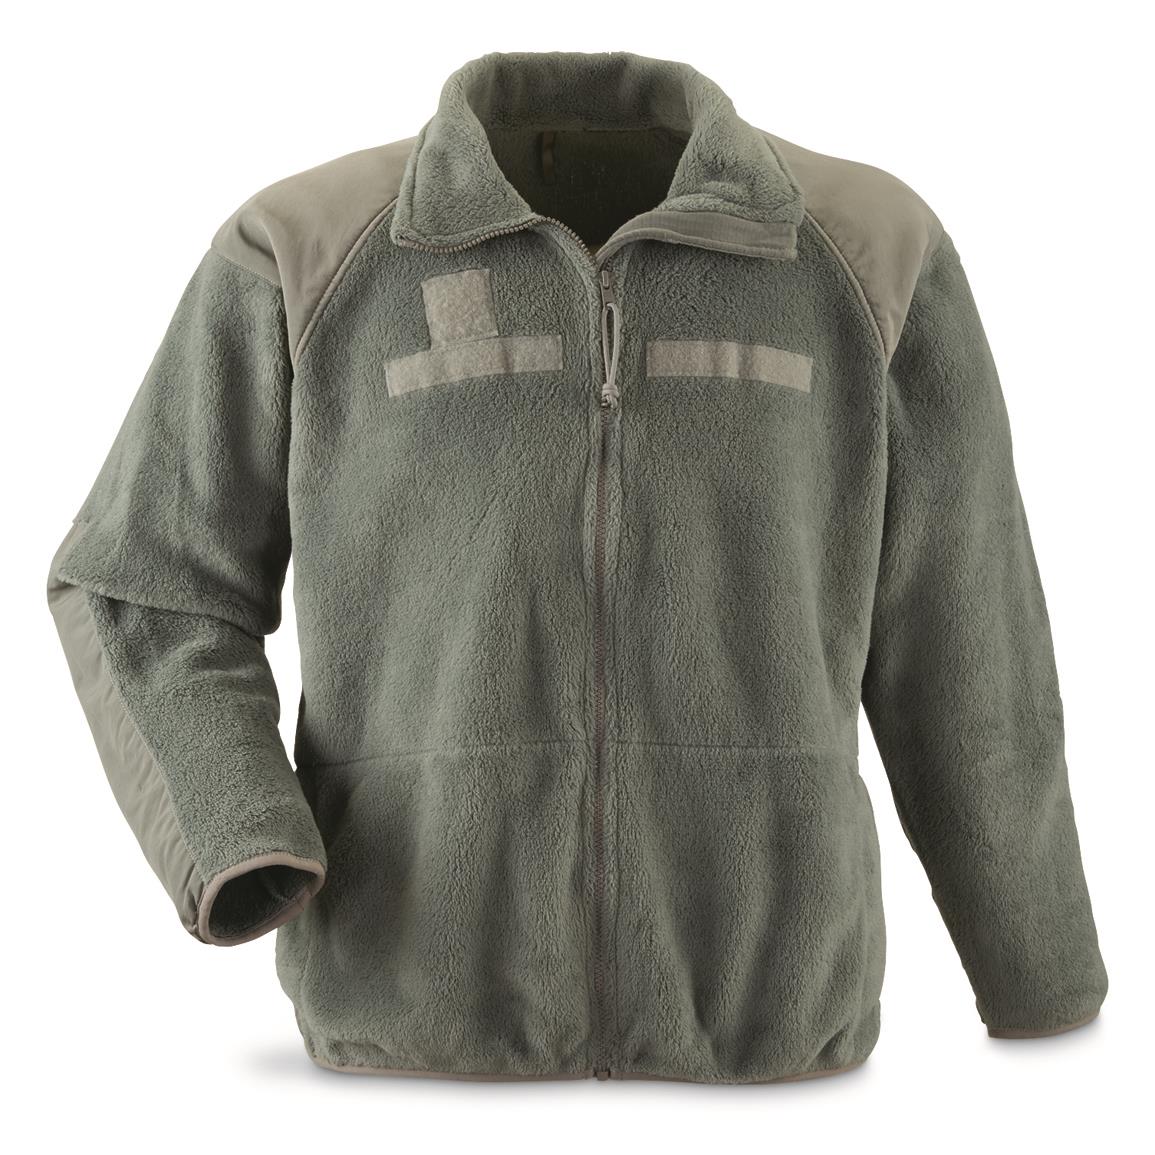 U.S. Military Surplus Fleece Jacket, Used, Foliage